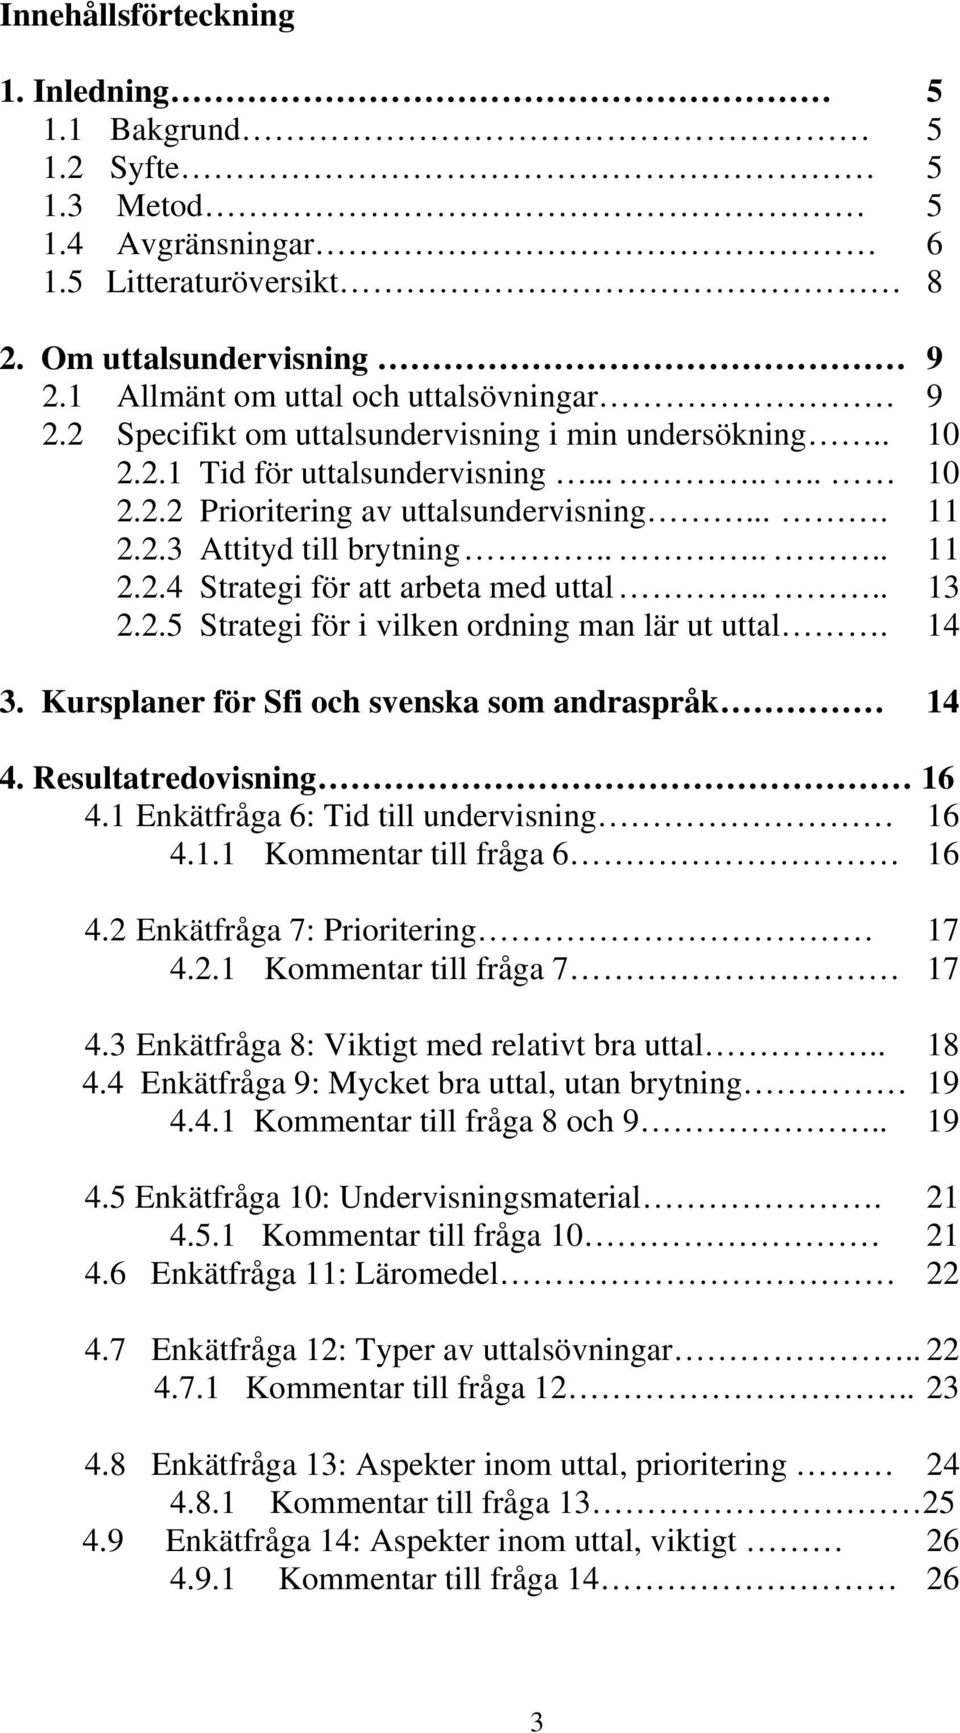 ... 13 2.2.5 Strategi för i vilken ordning man lär ut uttal. 14 3. Kursplaner för Sfi och svenska som andraspråk 14 4. Resultatredovisning 16 4.1 Enkätfråga 6: Tid till undervisning 16 4.1.1 Kommentar till fråga 6 16 4.